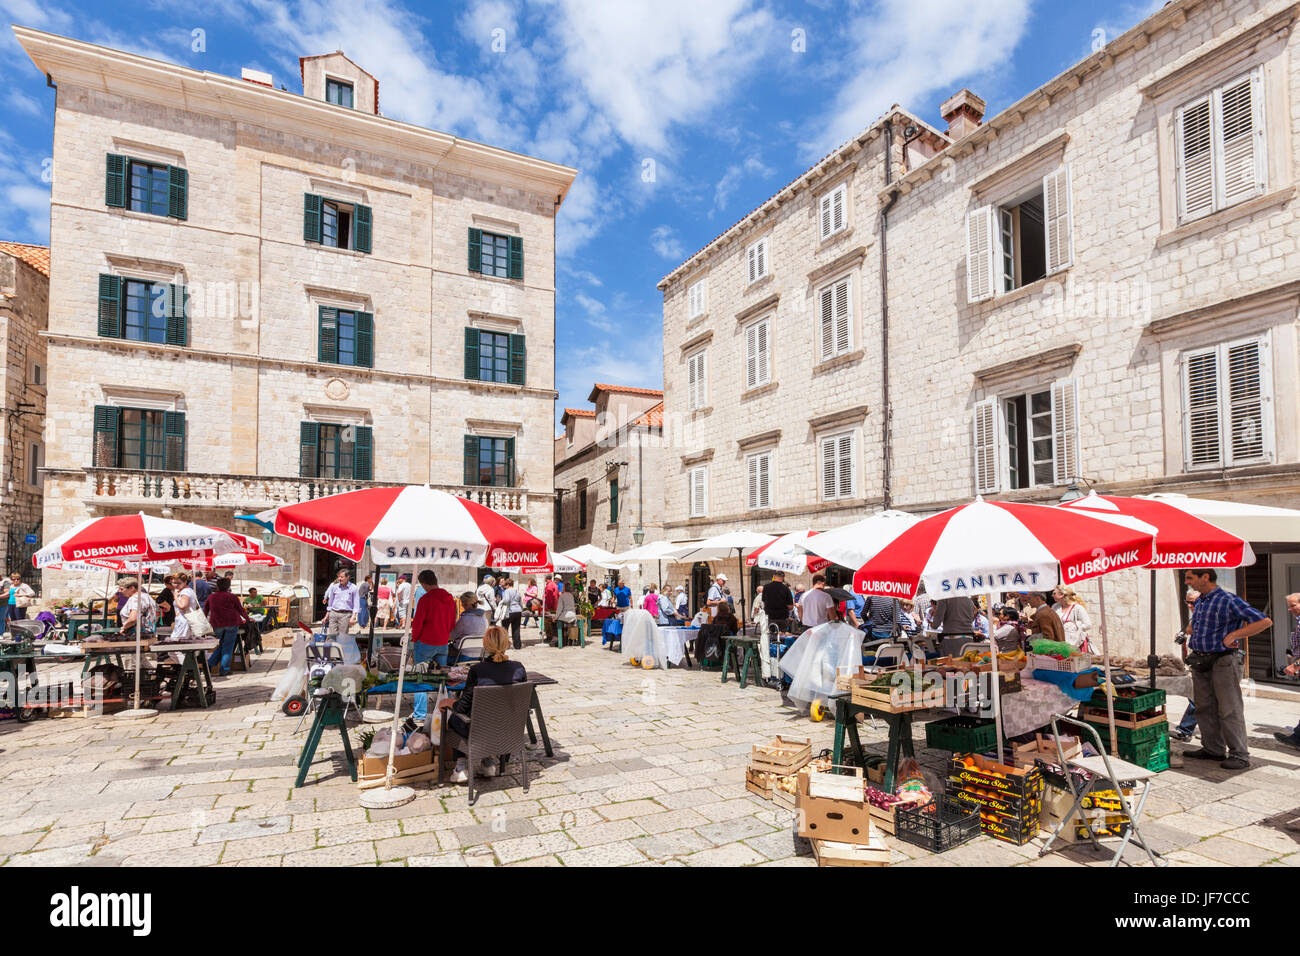 Dubrovnik Croazia costa dalmata mercato di artigianato e souvenir bancarelle di mercato aperto Piazza Gundulic, paese vecchio di Dubrovnik Dubrovnik, Dalmazia, Croazia Foto Stock